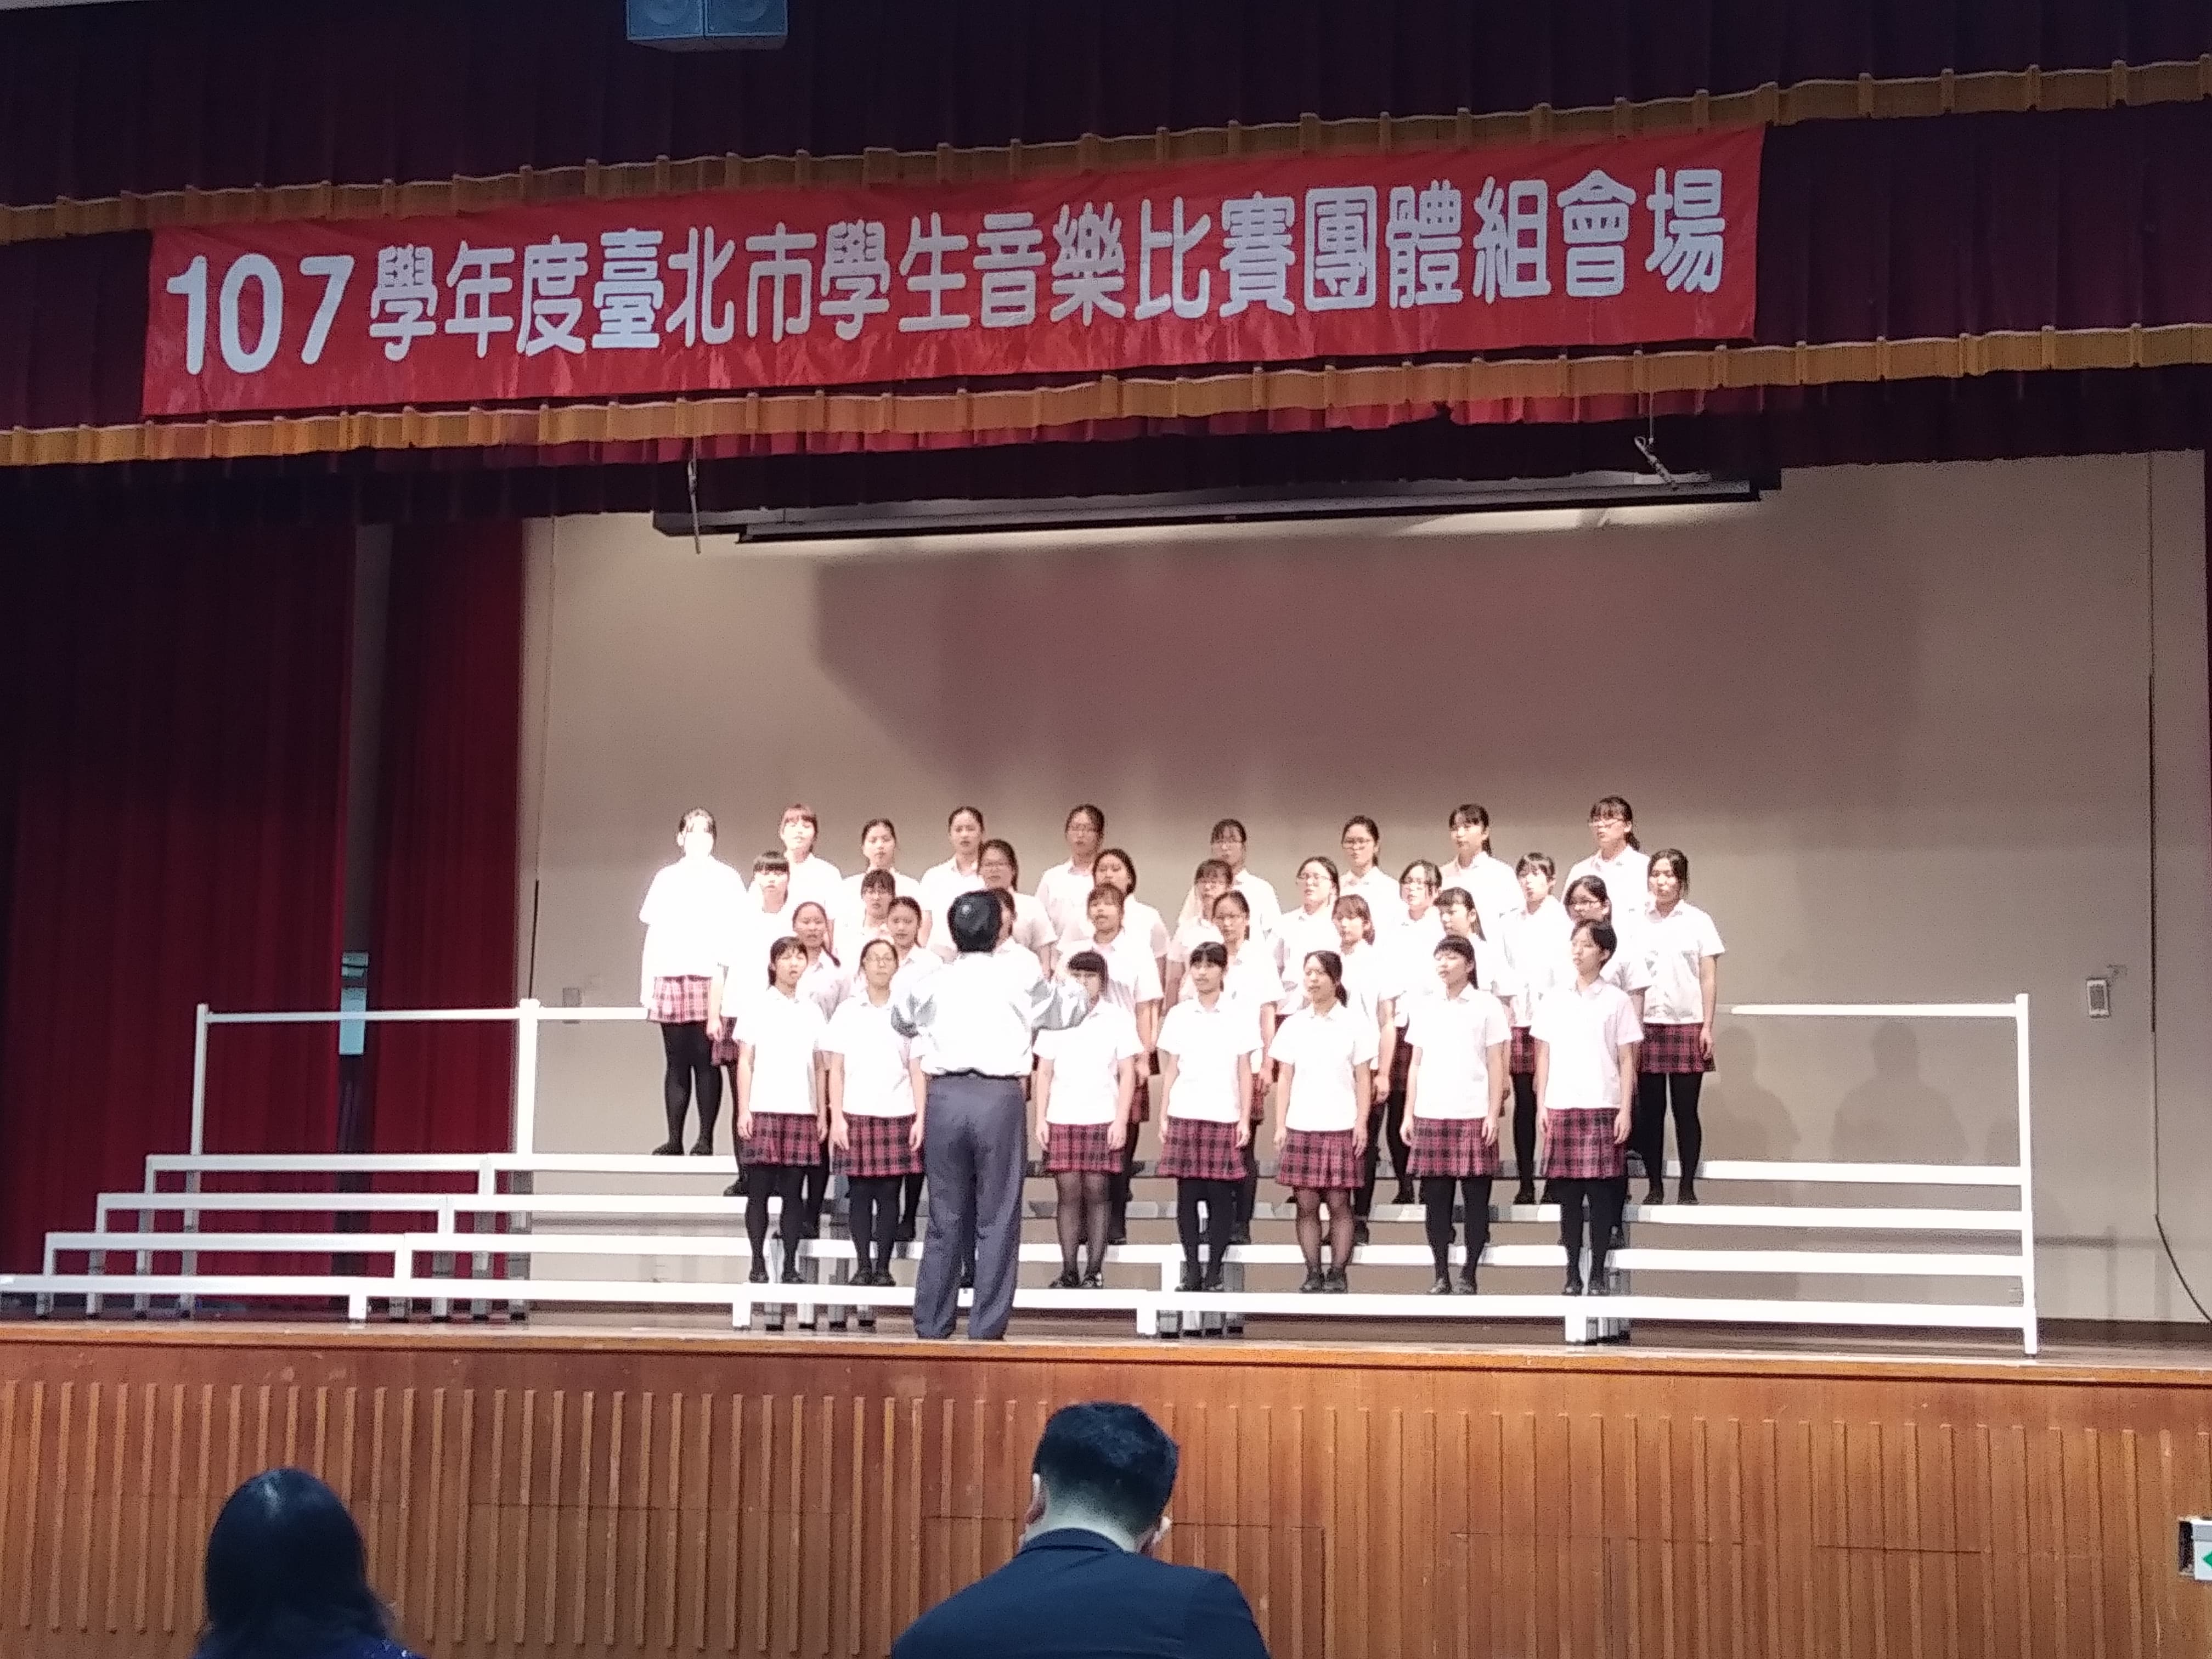 狂賀合唱團參加「107學年度臺北市學生音樂比賽/女聲合唱-高中職團體組」榮獲優等獎